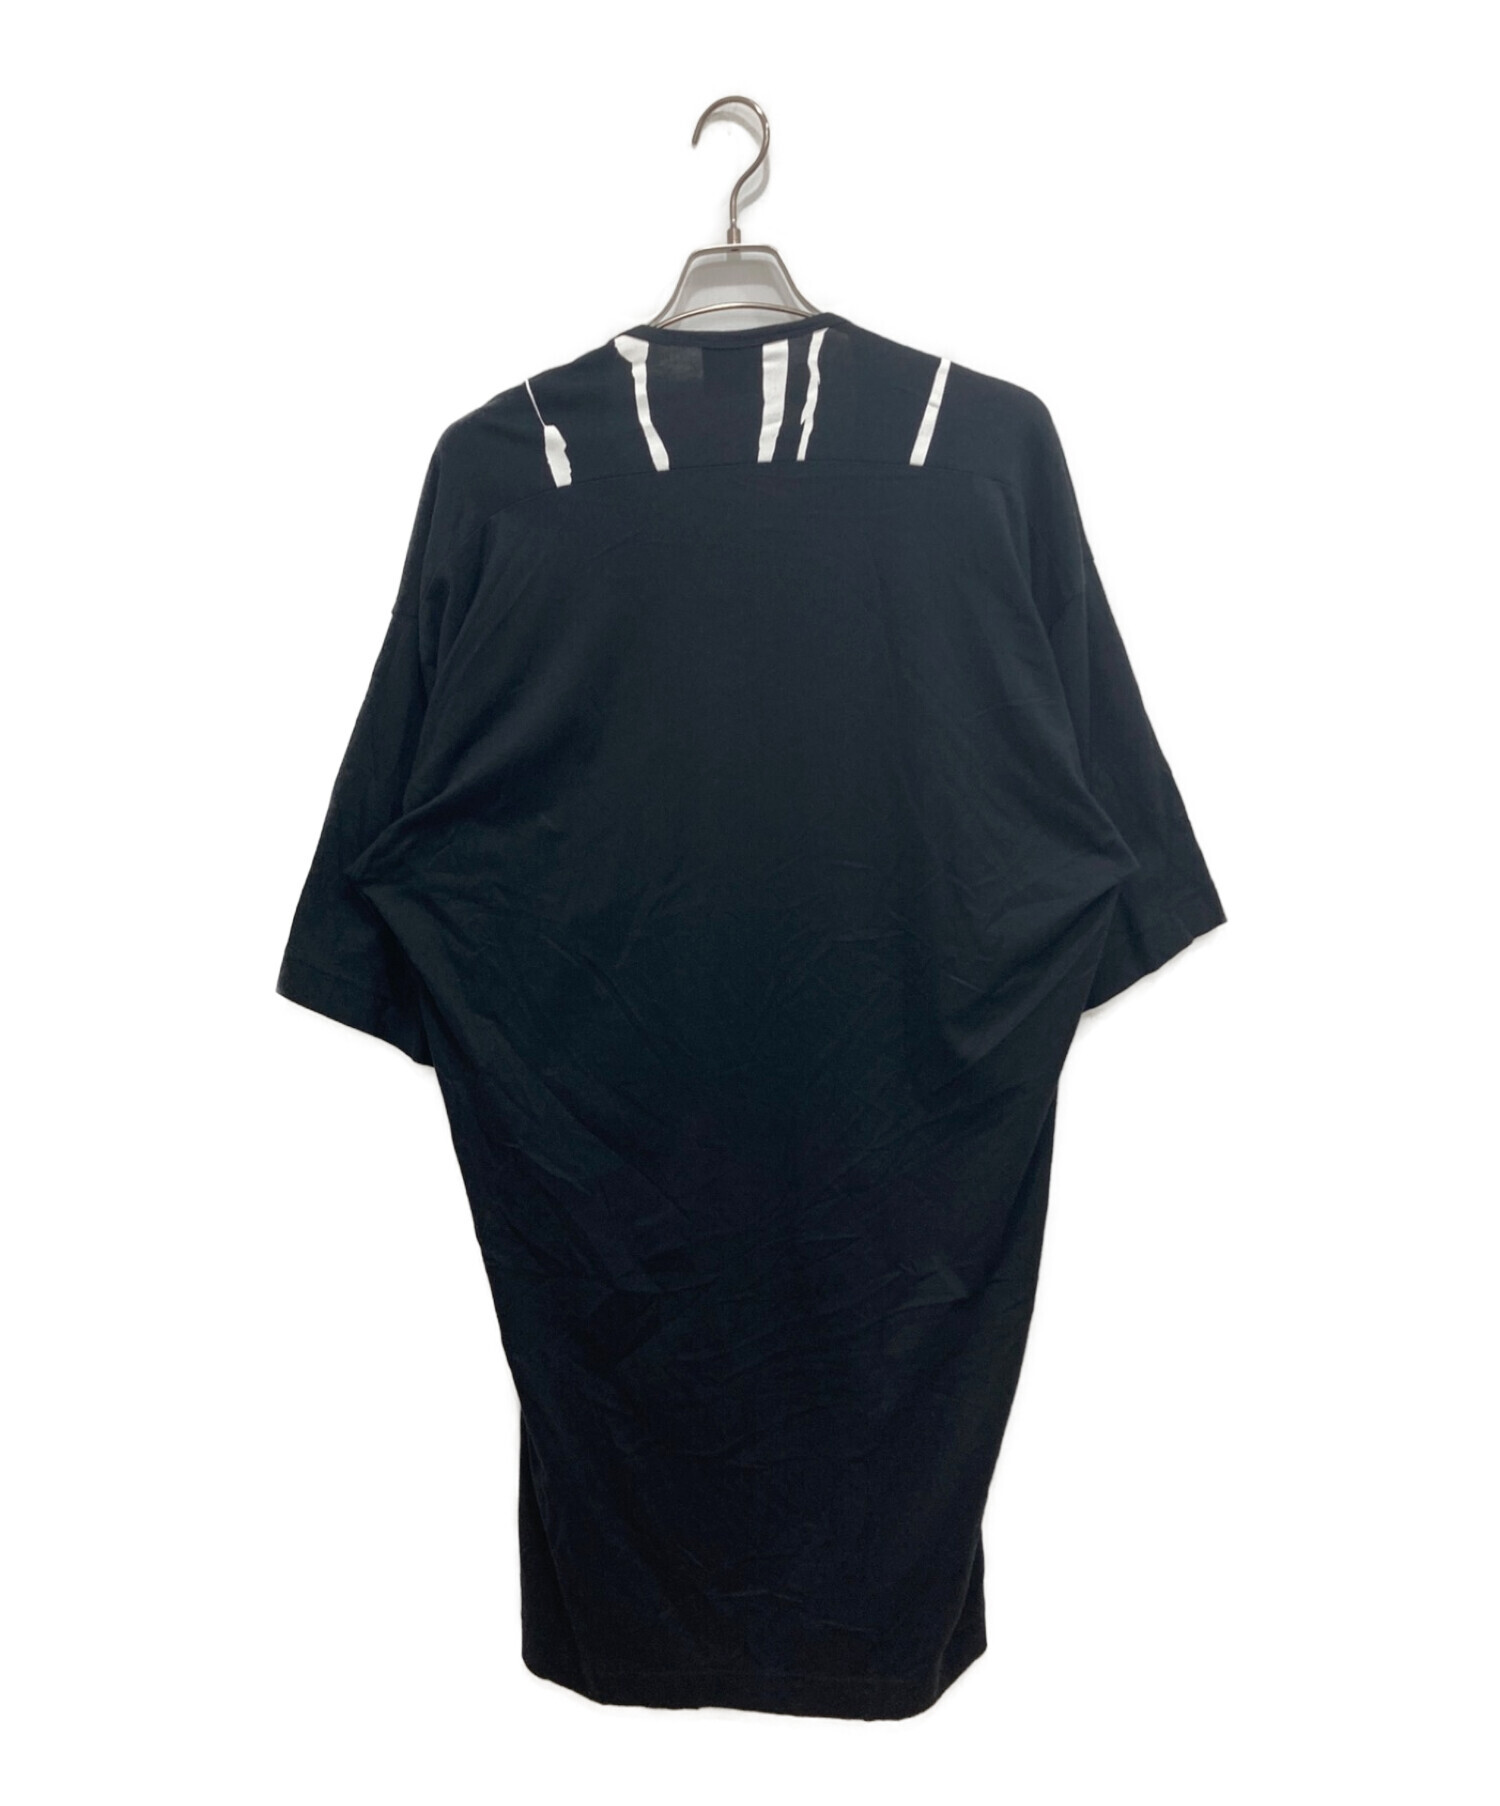 Vivienne Westwood man (ヴィヴィアン ウェストウッド マン) プリントドロップロングTシャツ ブラック サイズ:Free